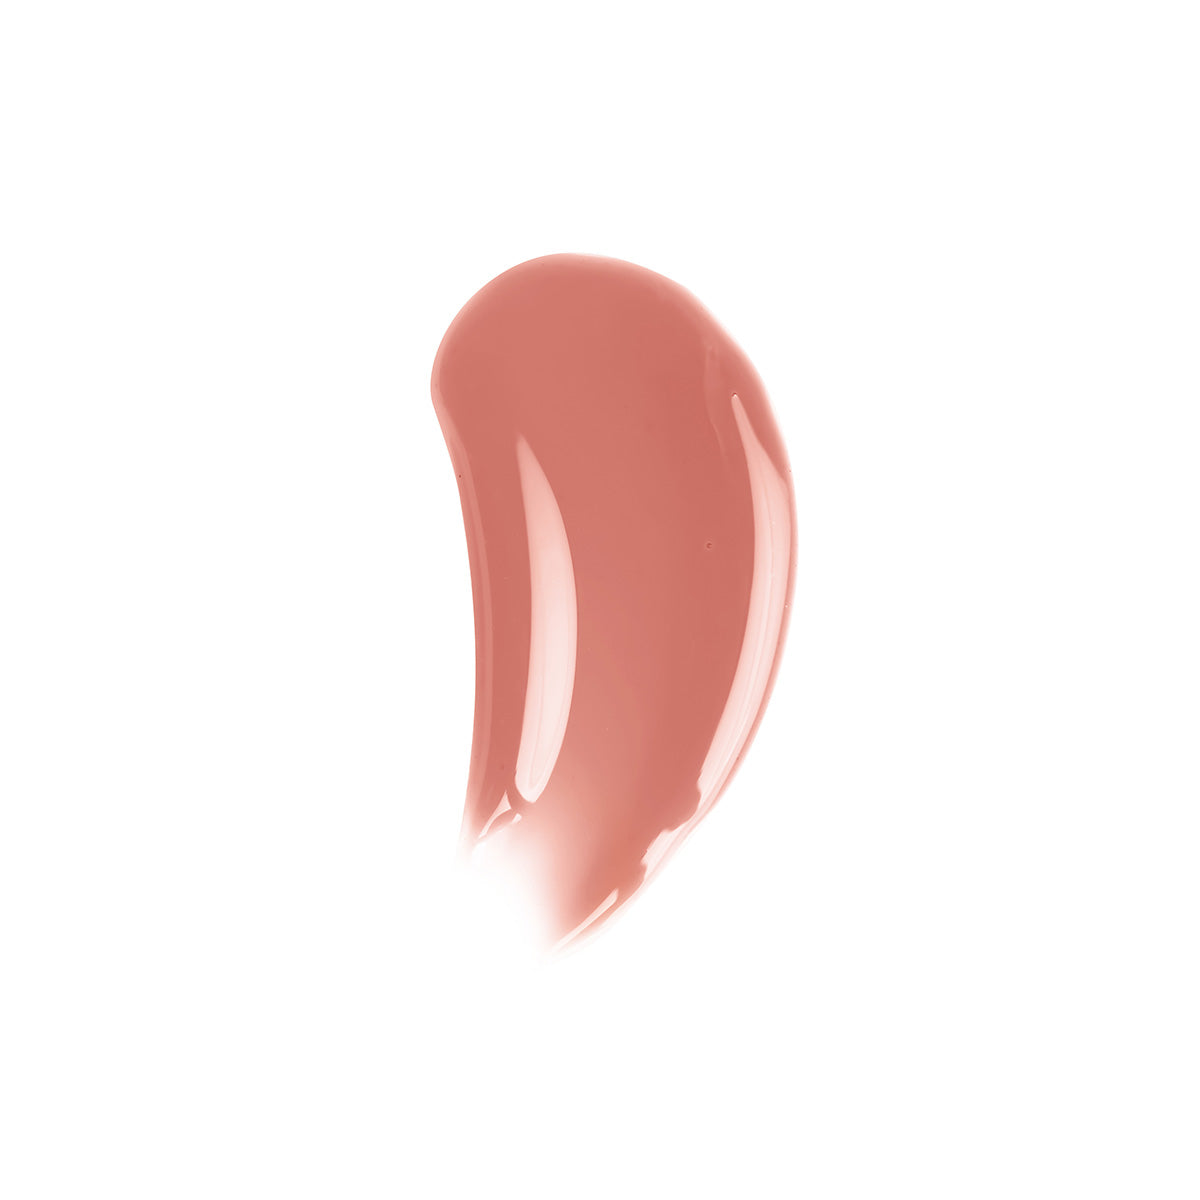 Coral Lip Gloss